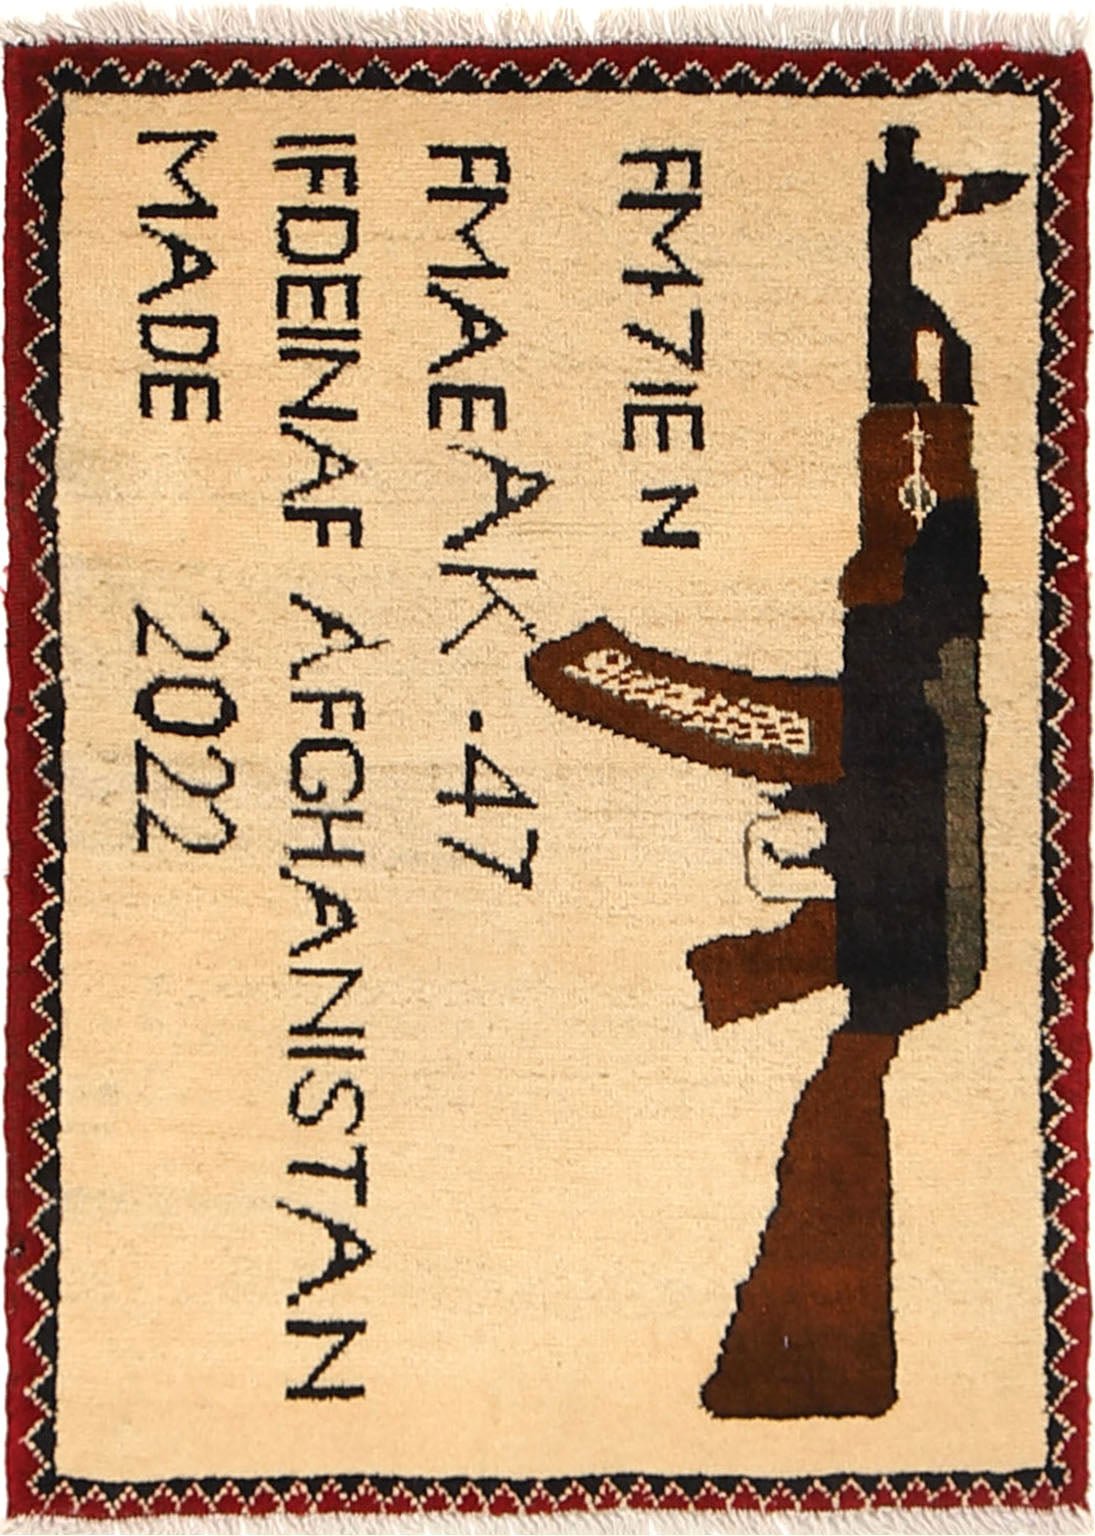 AK 47 War Rugs - ZEWAH.COM